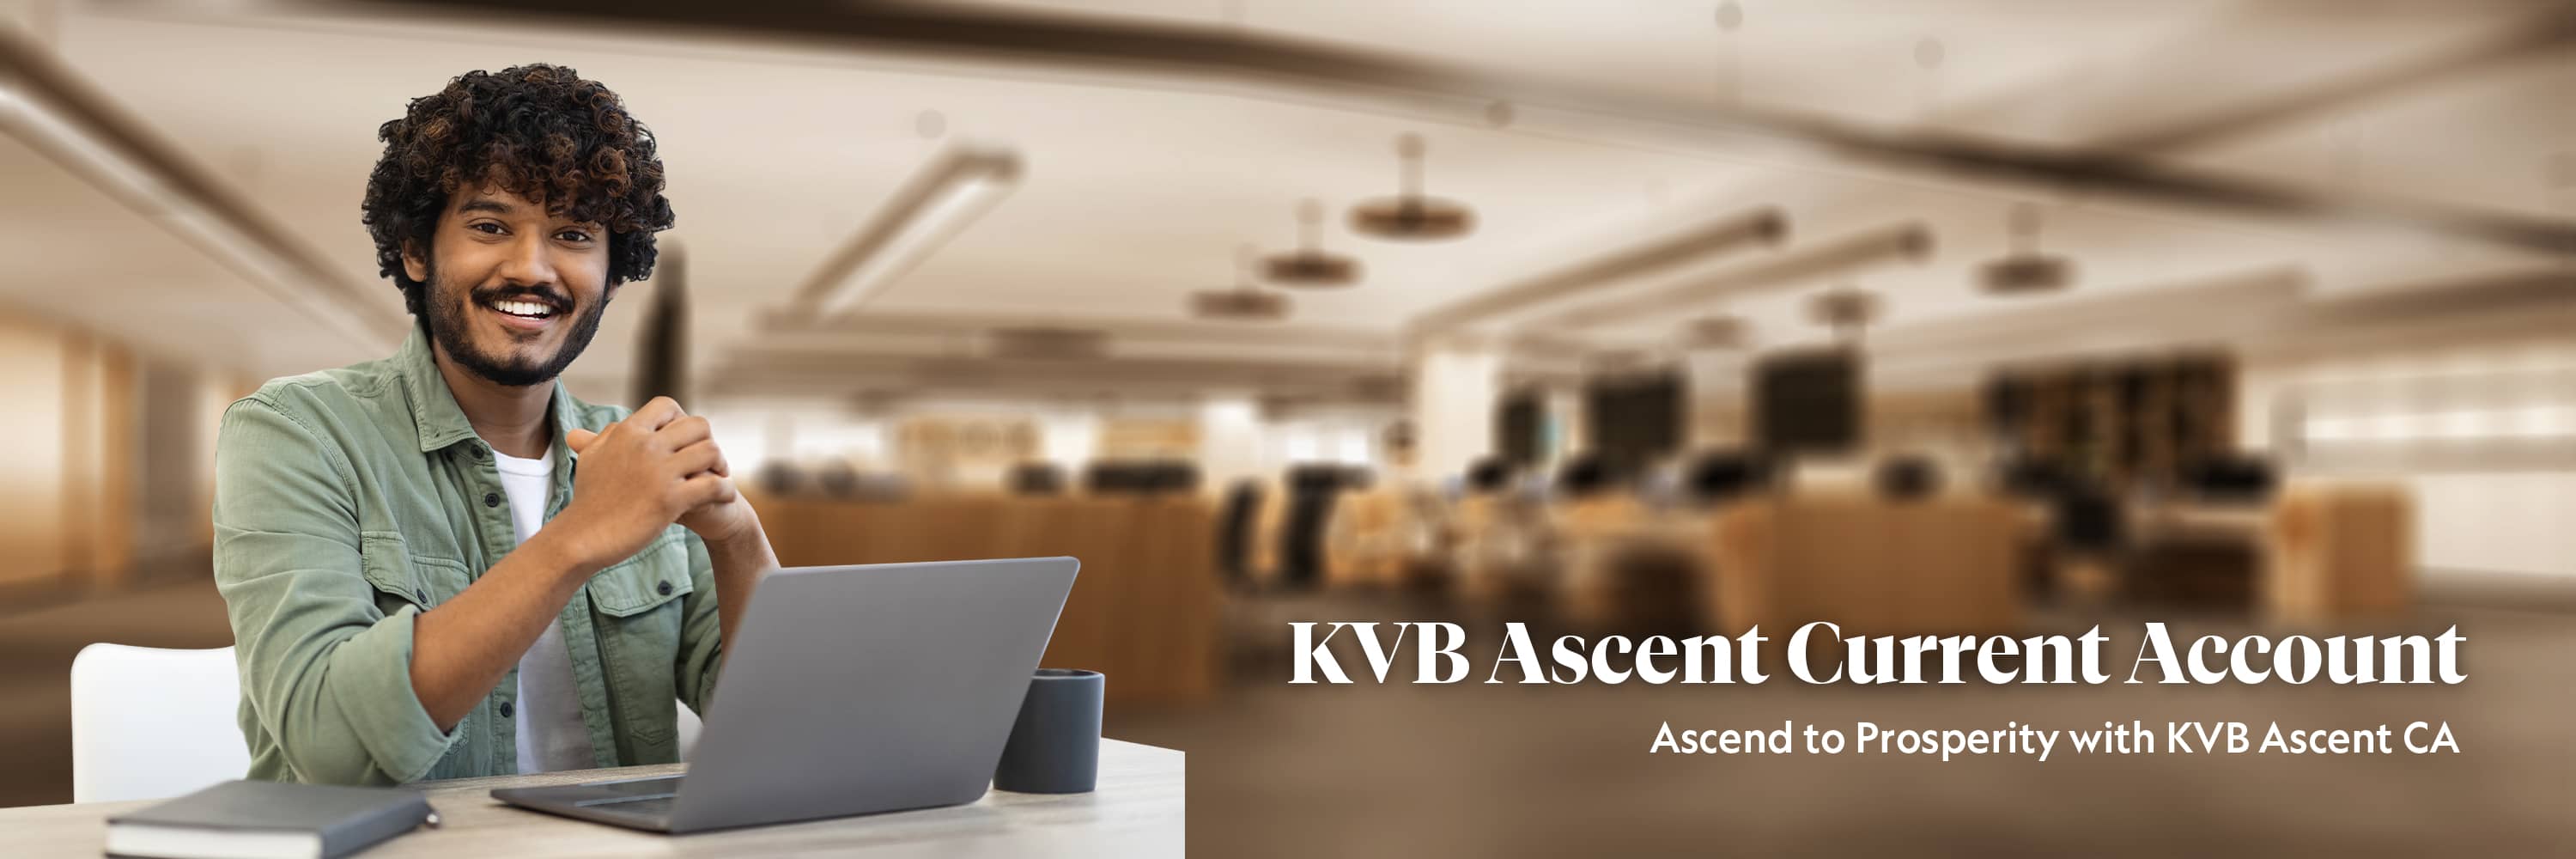 KVB Ascent Current Account